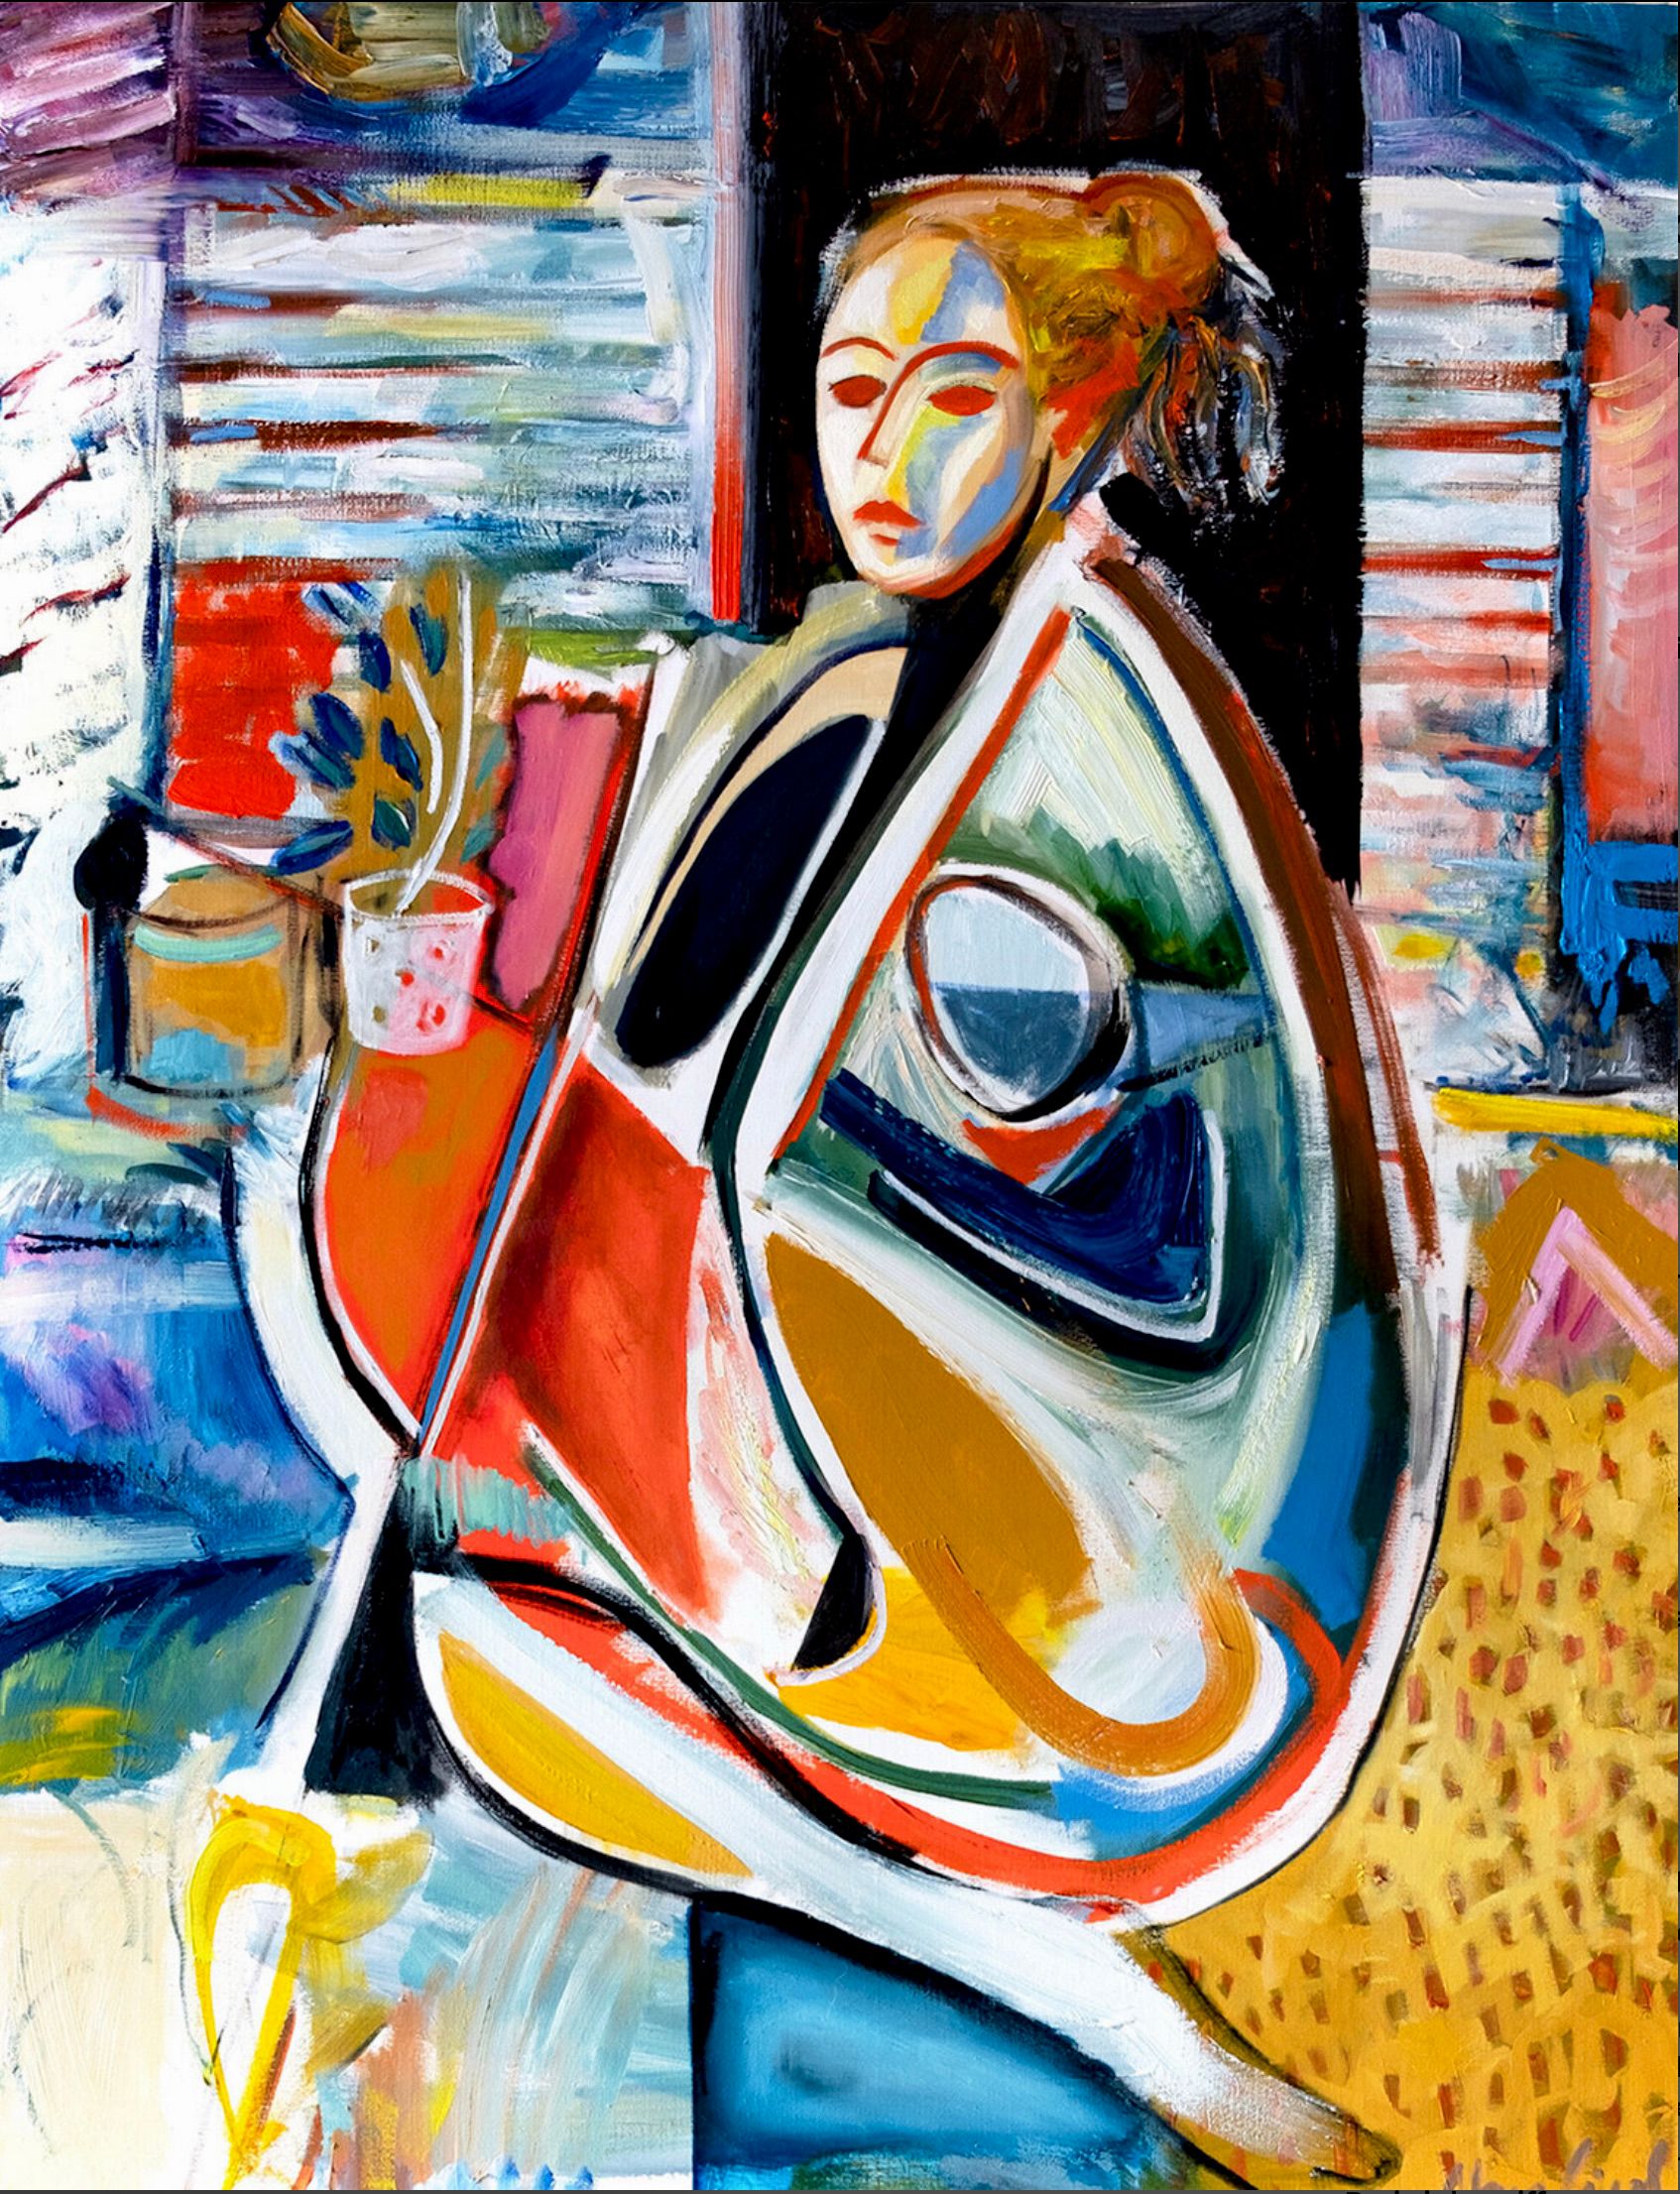 MECESLA Maciej Cieśla, "抽象形式的女人，工作室里的女孩"，抽象画中的女孩在艺术工作室的物体背景中。一个年轻的模特以几何形式和积极的色彩组合，以红色为基调。